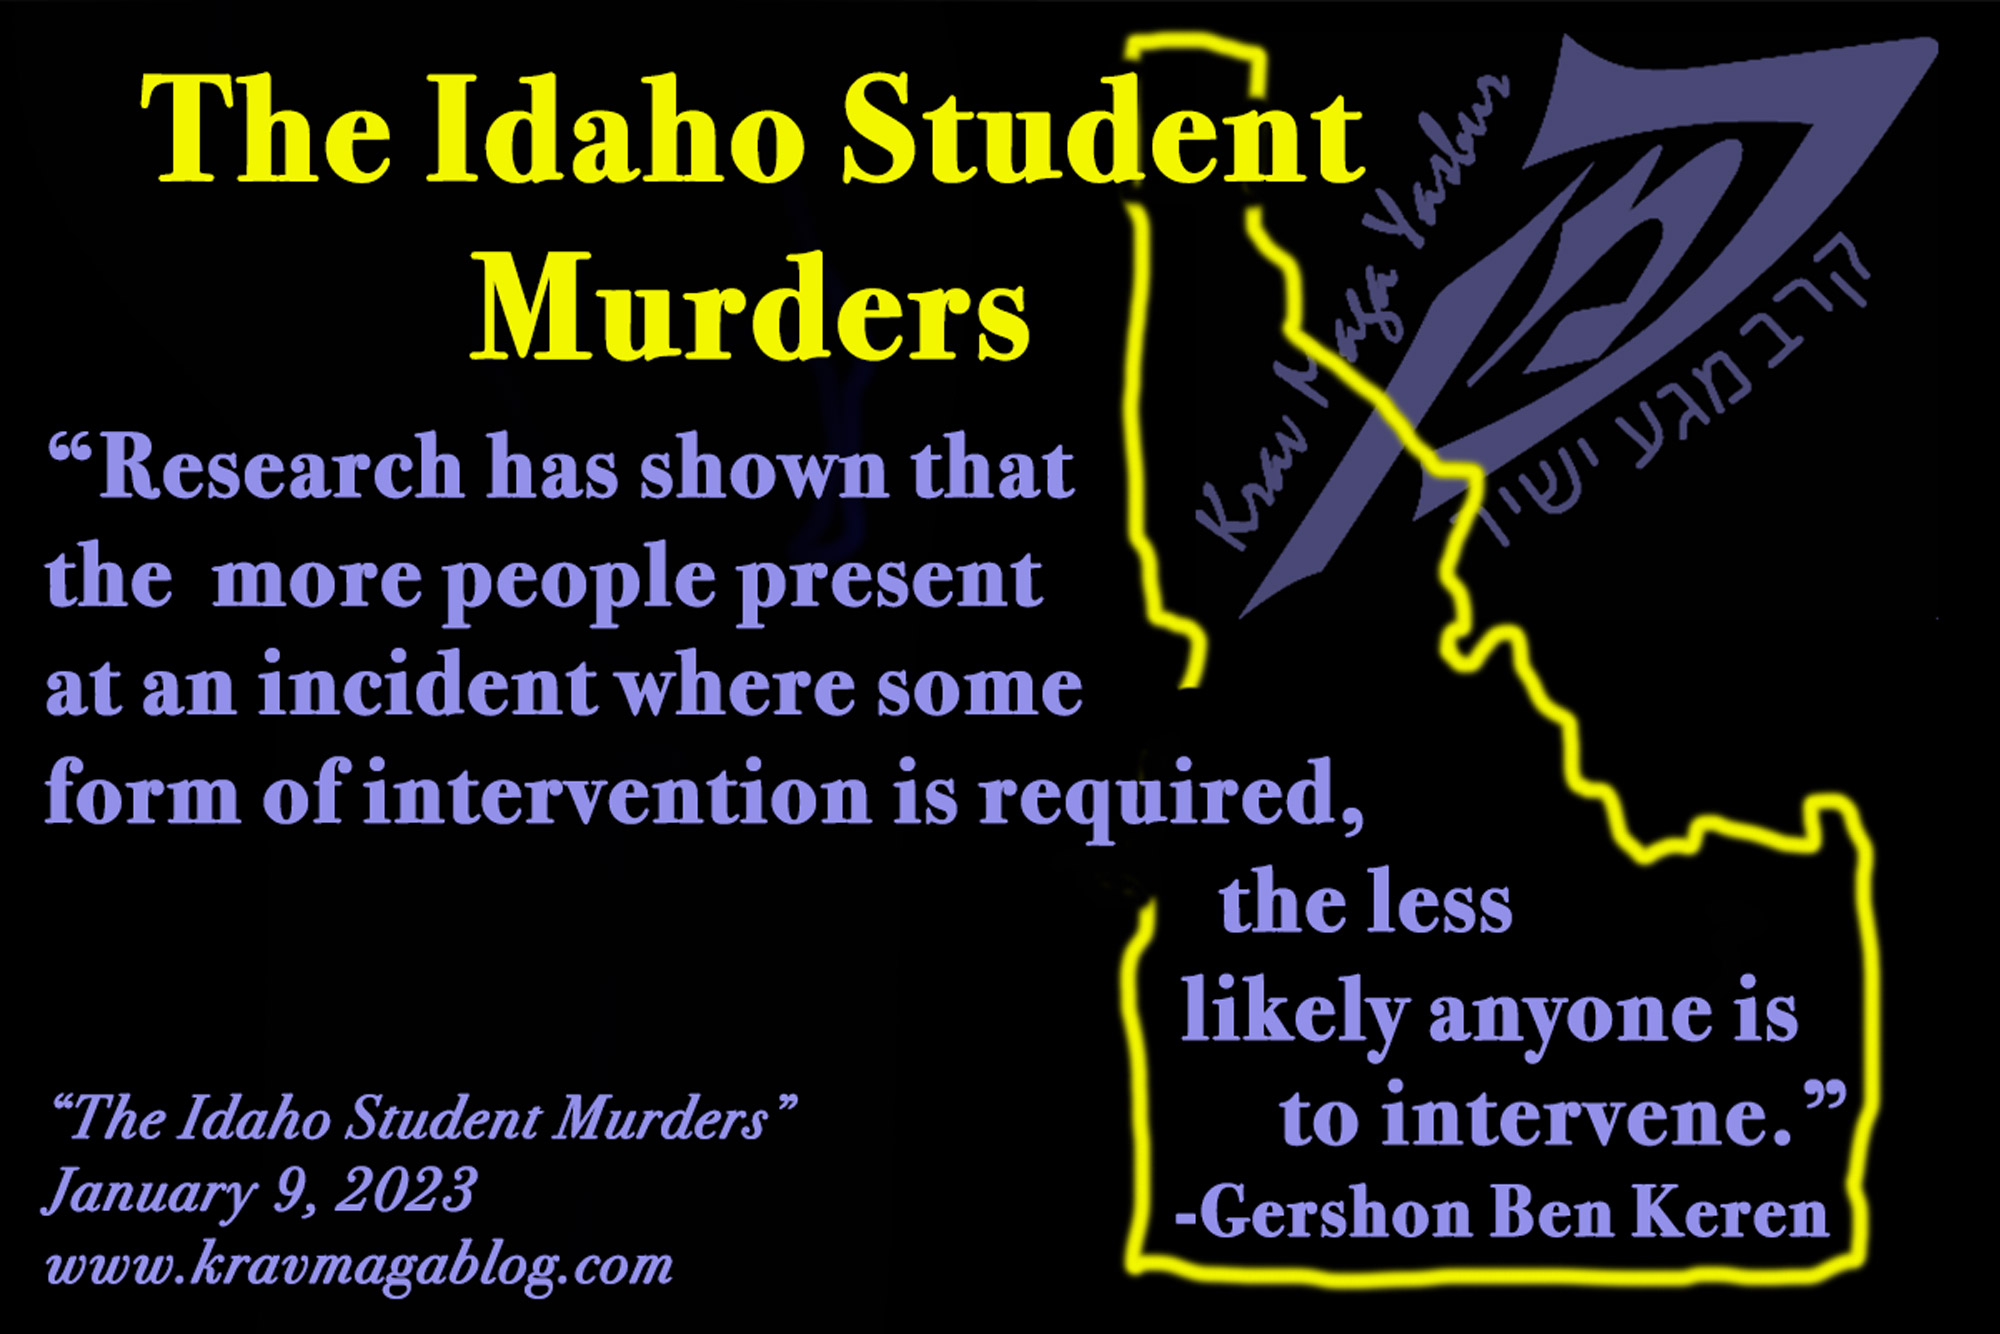 The Idaho Student Murders